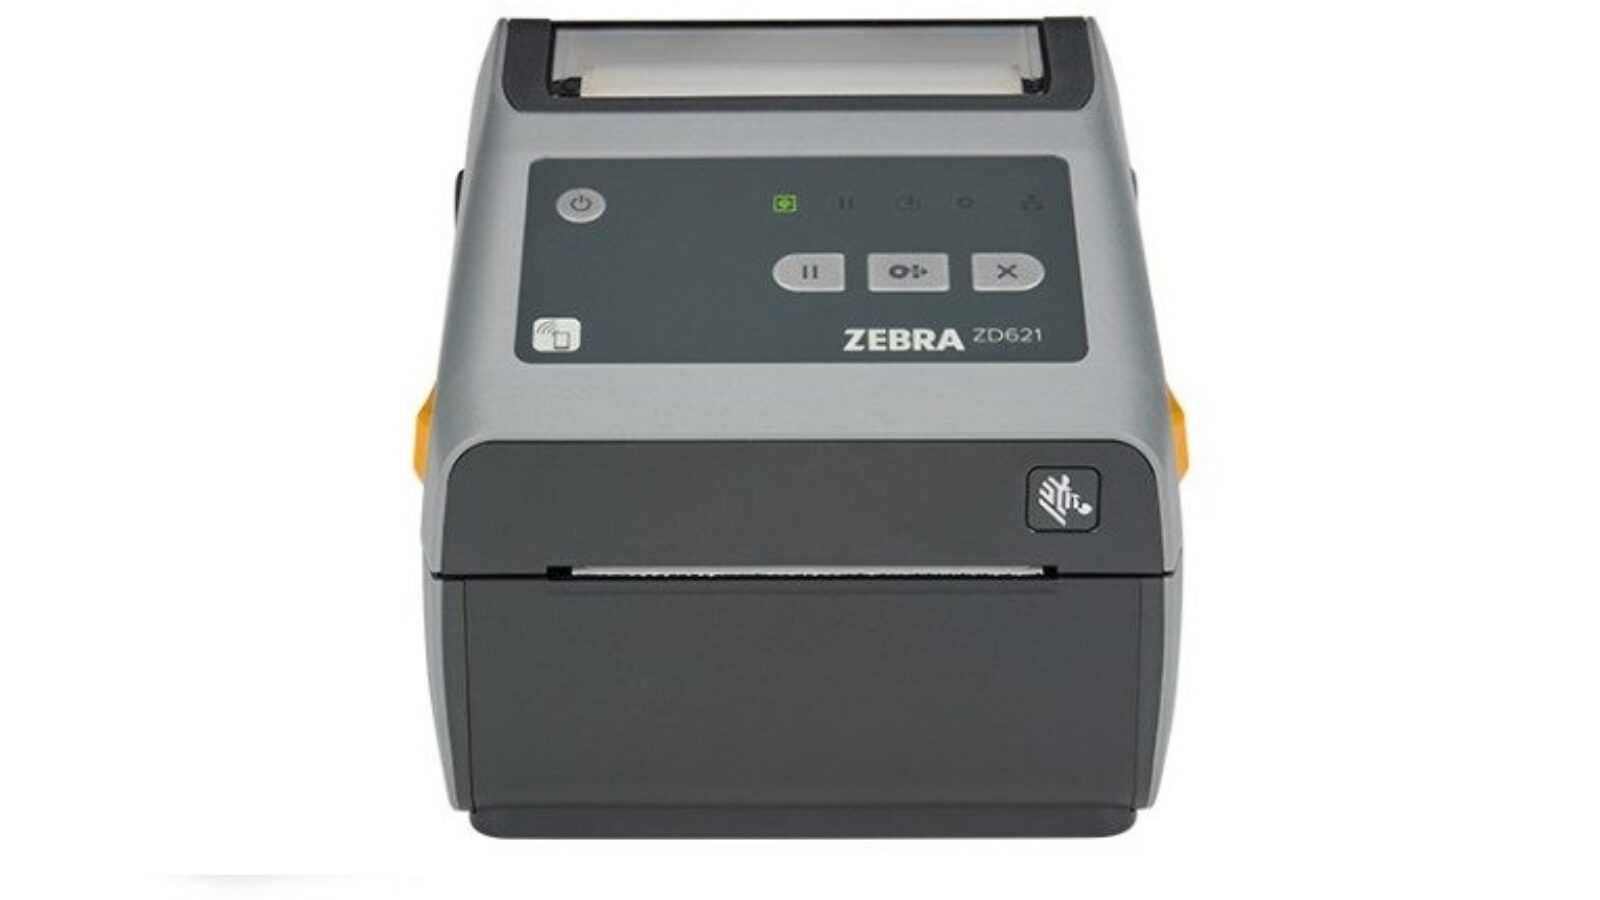 Zebra Zd621 Label Printer Codipack 3527